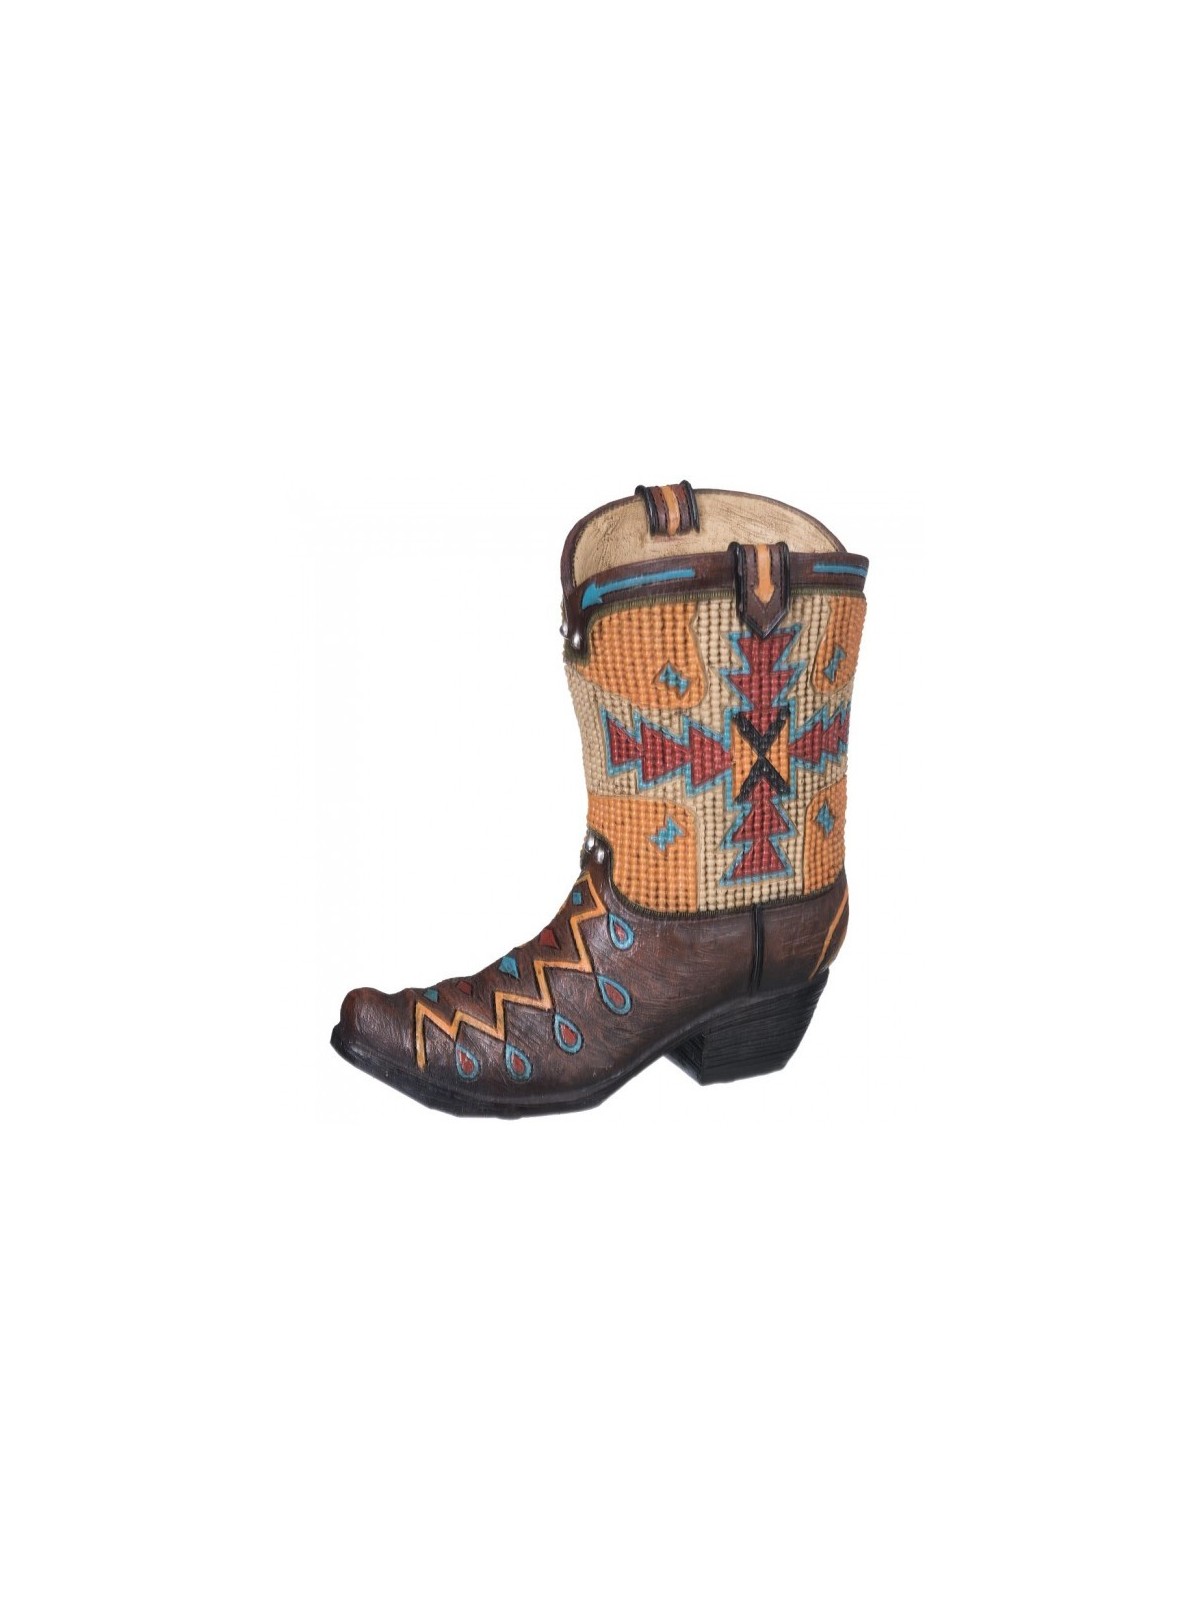 Aztec Cowboy Boot Bank